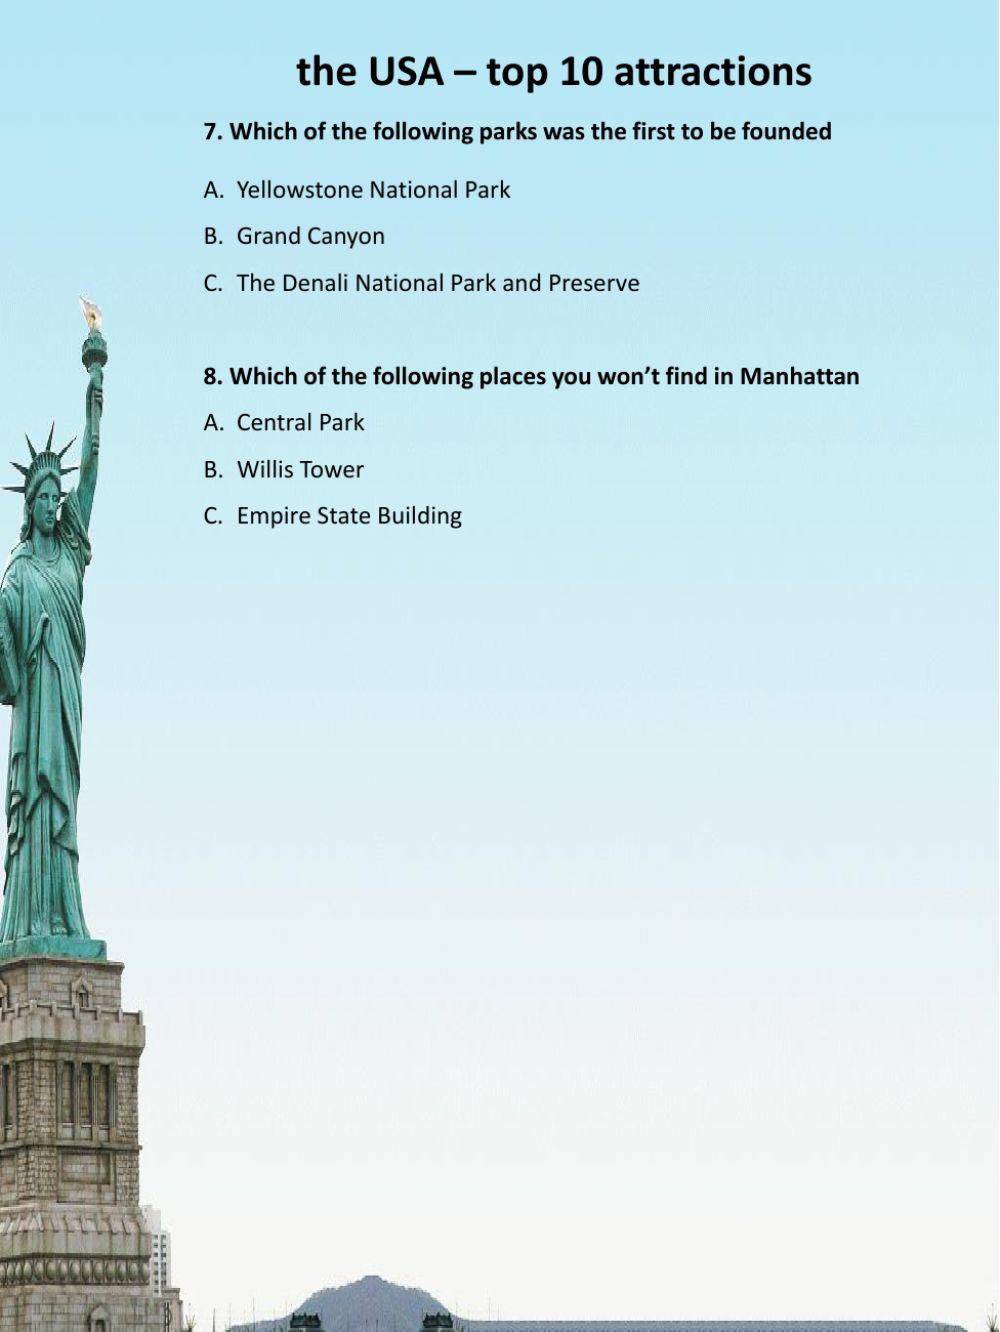 USA- top 10 landmarks